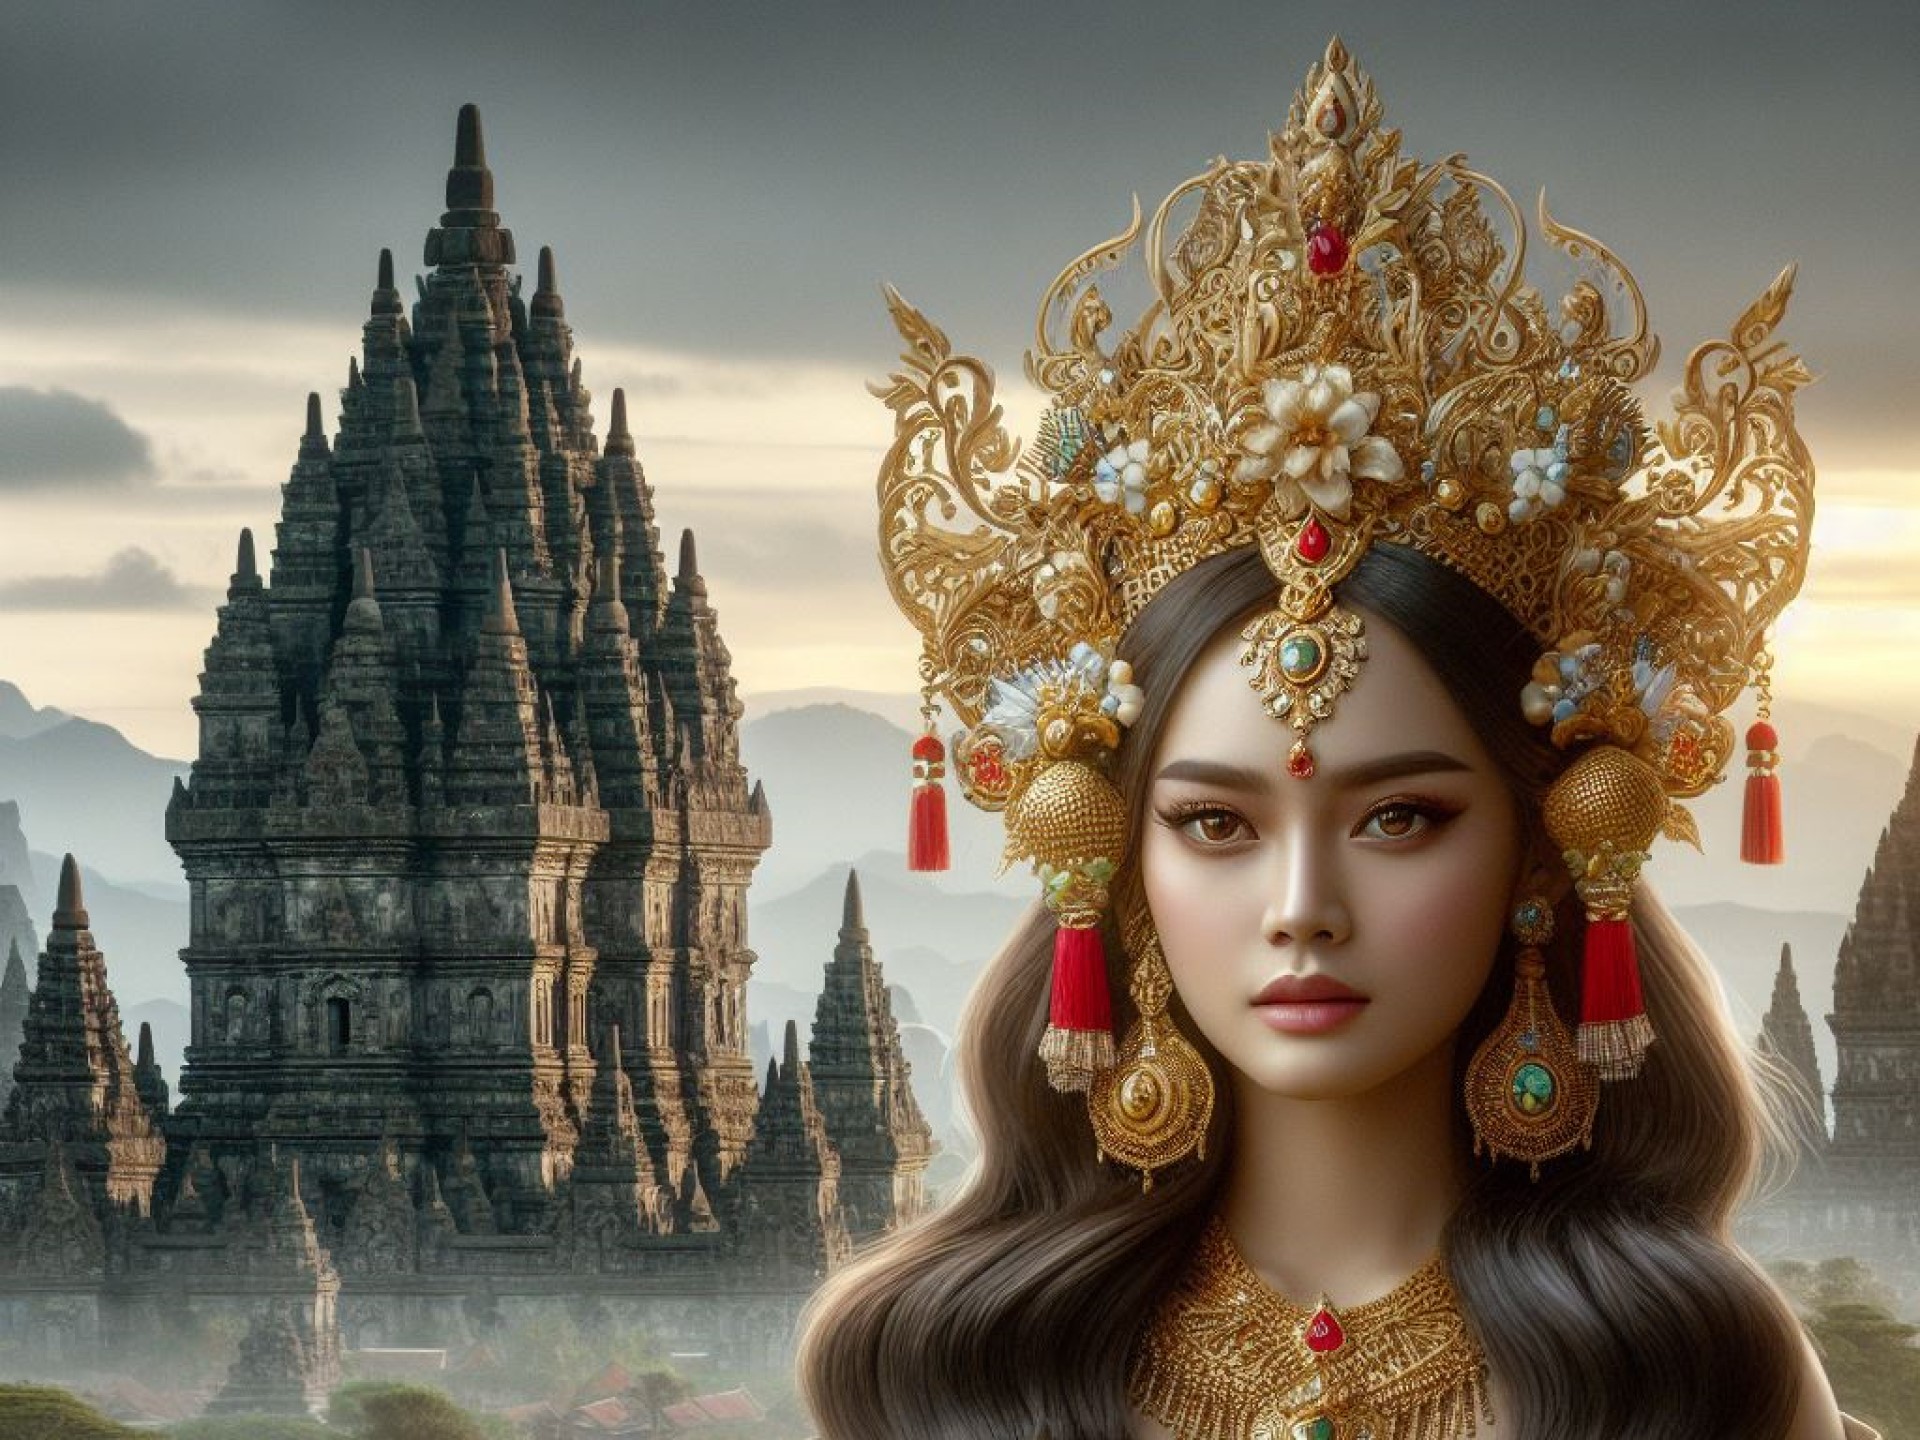 Mengenal Sosok Roro Jonggrang yang Dikutuk Bandung Bondowoso Menjadi Arca Durga di Candi Prambanan